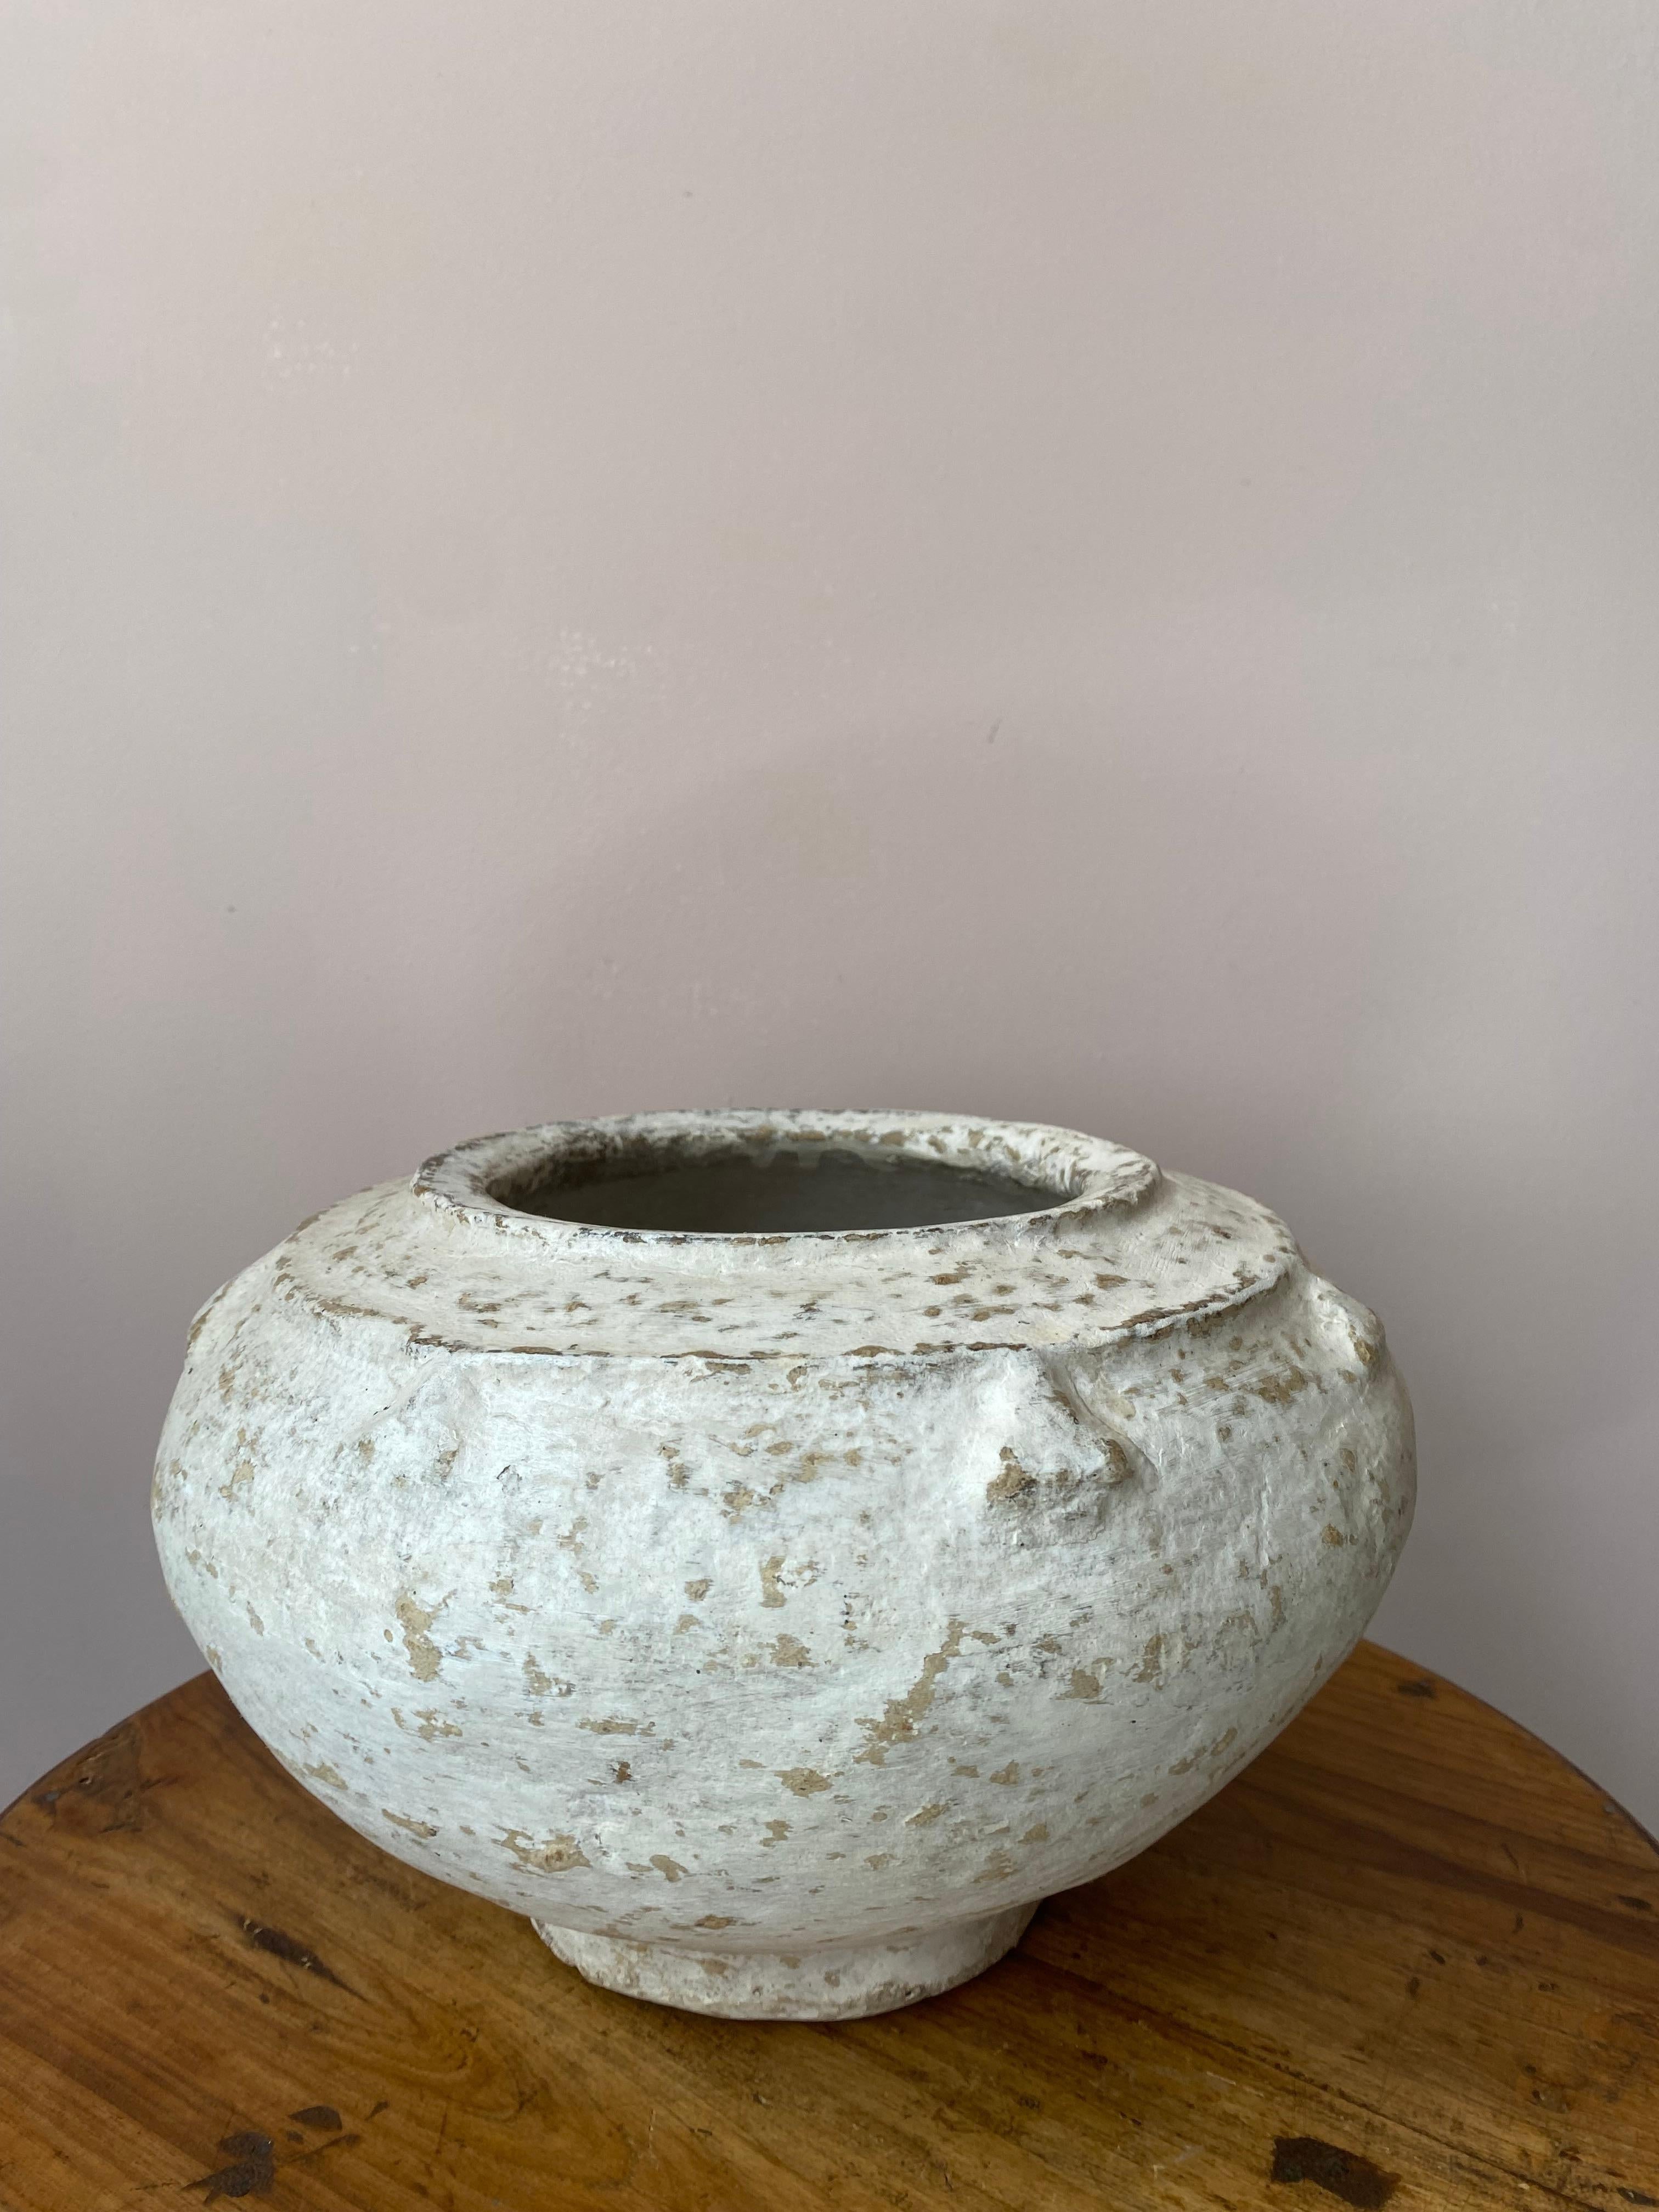 Ce vase vintage en papier mâché provient du Rajasthan, où le papier mâché a été utilisé pour la première fois pour sa qualité d'isolation. 
Sa couleur blanche en fait un objet très décoratif